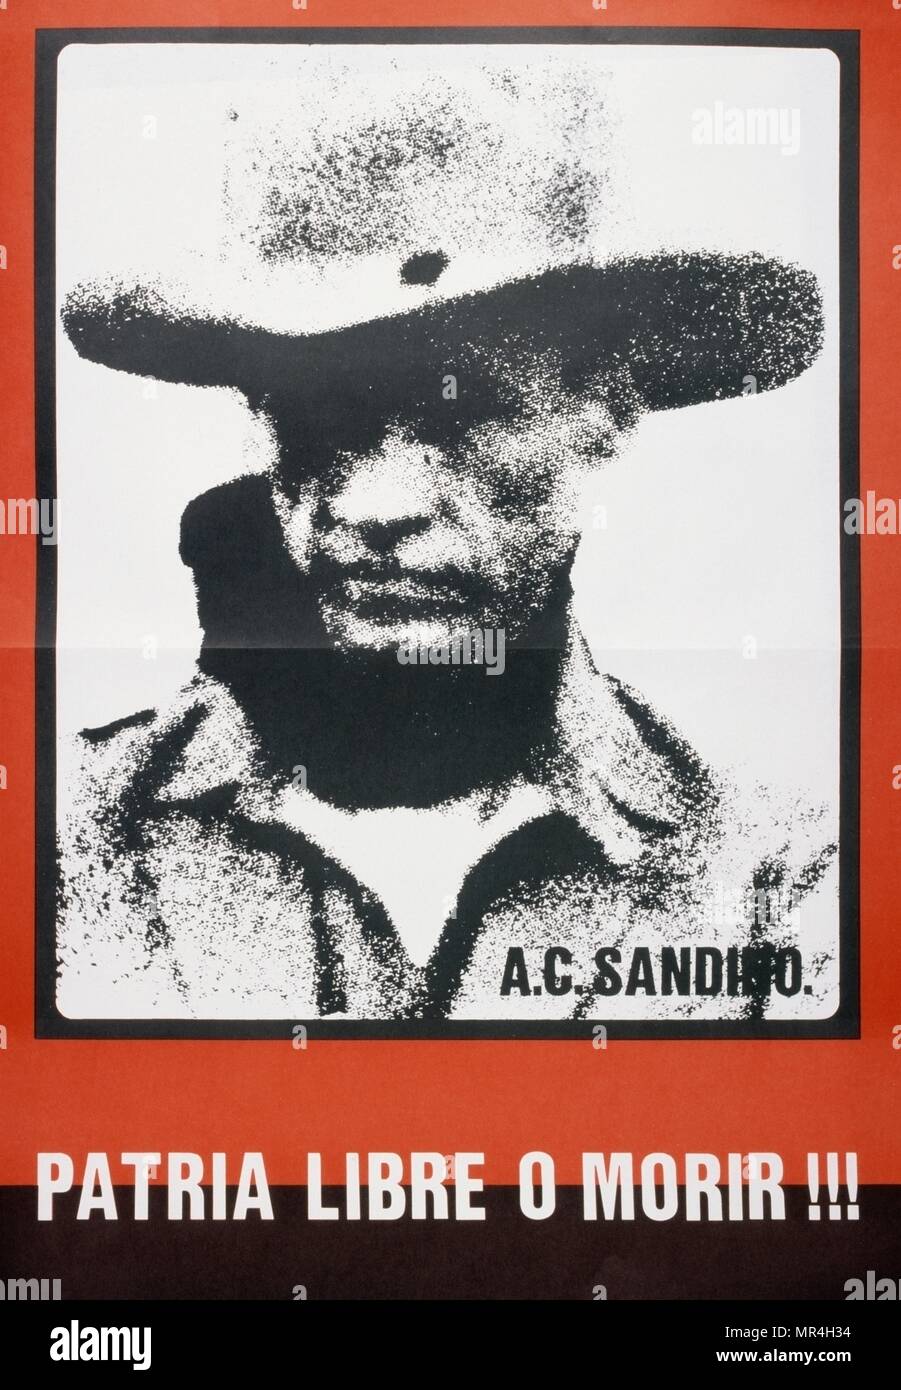 Frente Sandinista de Liberación Nacional (FSLN) cartel propagandístico en Nicaragua. El partido fue nombrado después de Augusto César Sandino, quien encabezó la resistencia nicaragüense contra la ocupación de los Estados Unidos de Nicaragua en 1930. El FSLN derrocó a Anastasio Somoza en 1979, poniendo fin a la dinastía Somoza, y estableció un gobierno revolucionario en su lugar. Tras su toma del poder, los sandinistas gobernaron Nicaragua desde 1979 a 1990, primero como parte de una Junta de Gobierno de Reconstrucción Nacional. Foto de stock